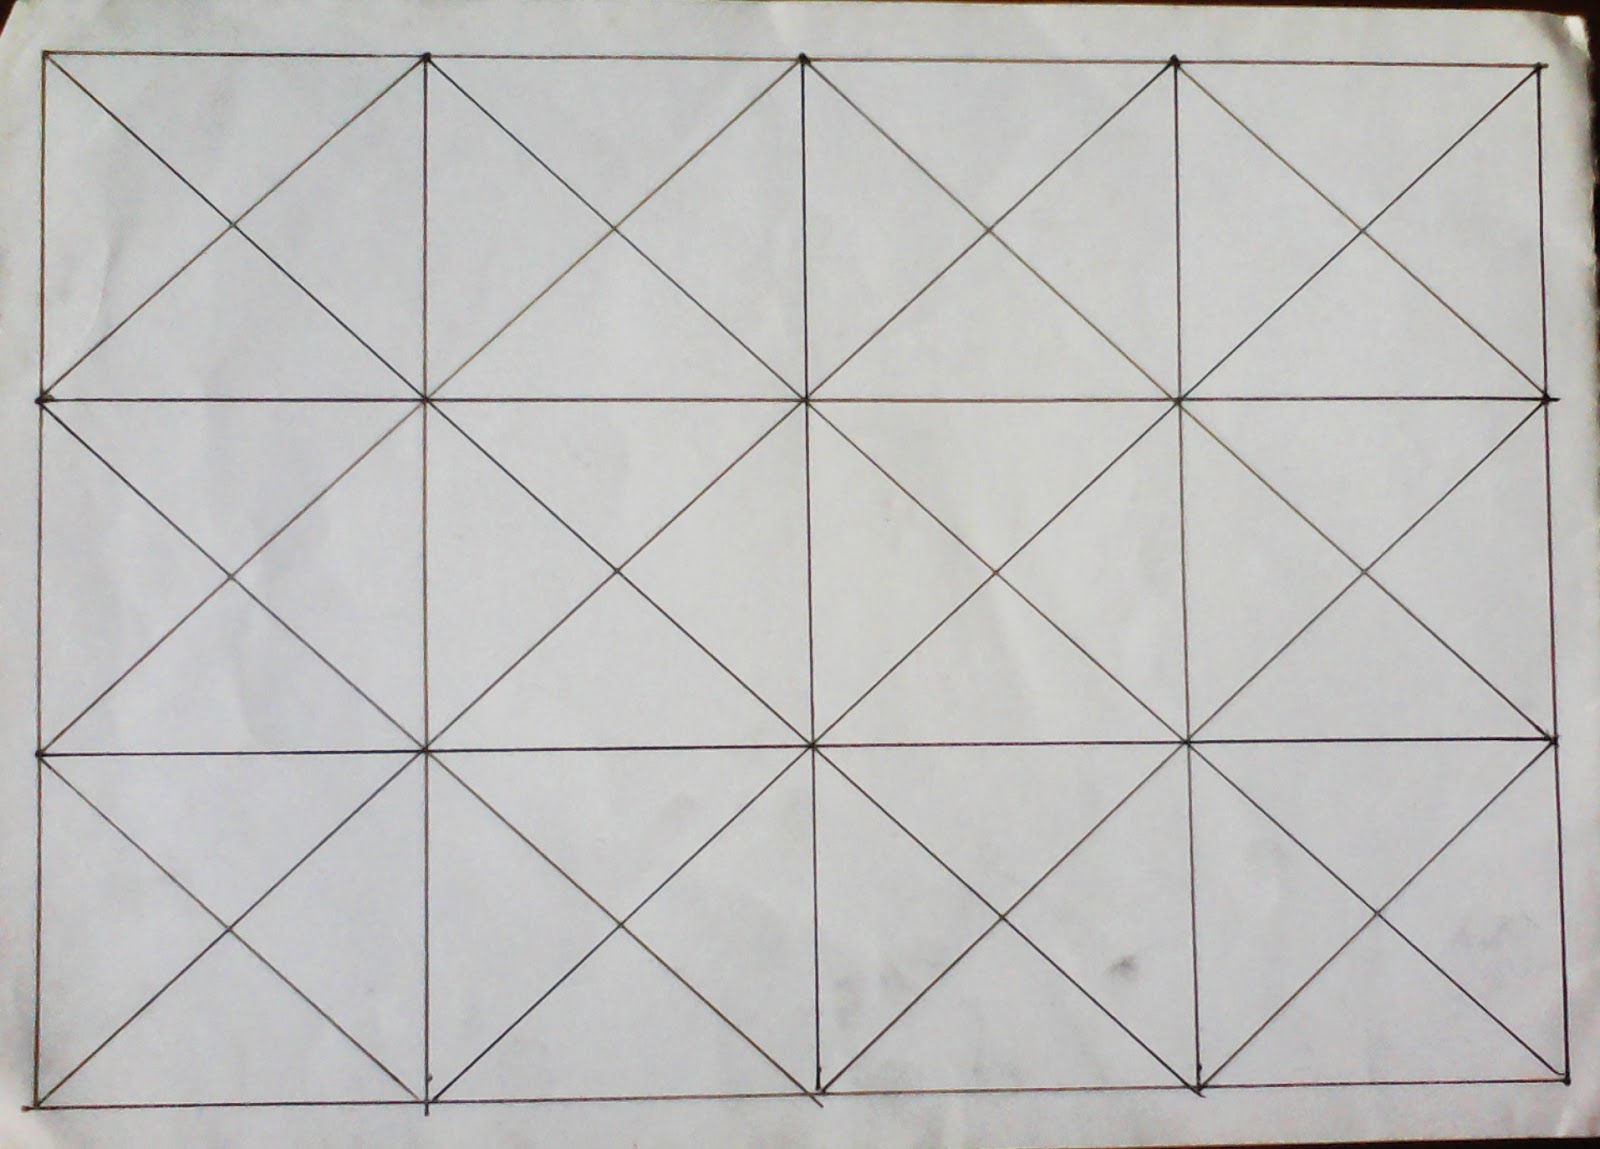 Menggambar Motif Batik Geometris | Shona Design